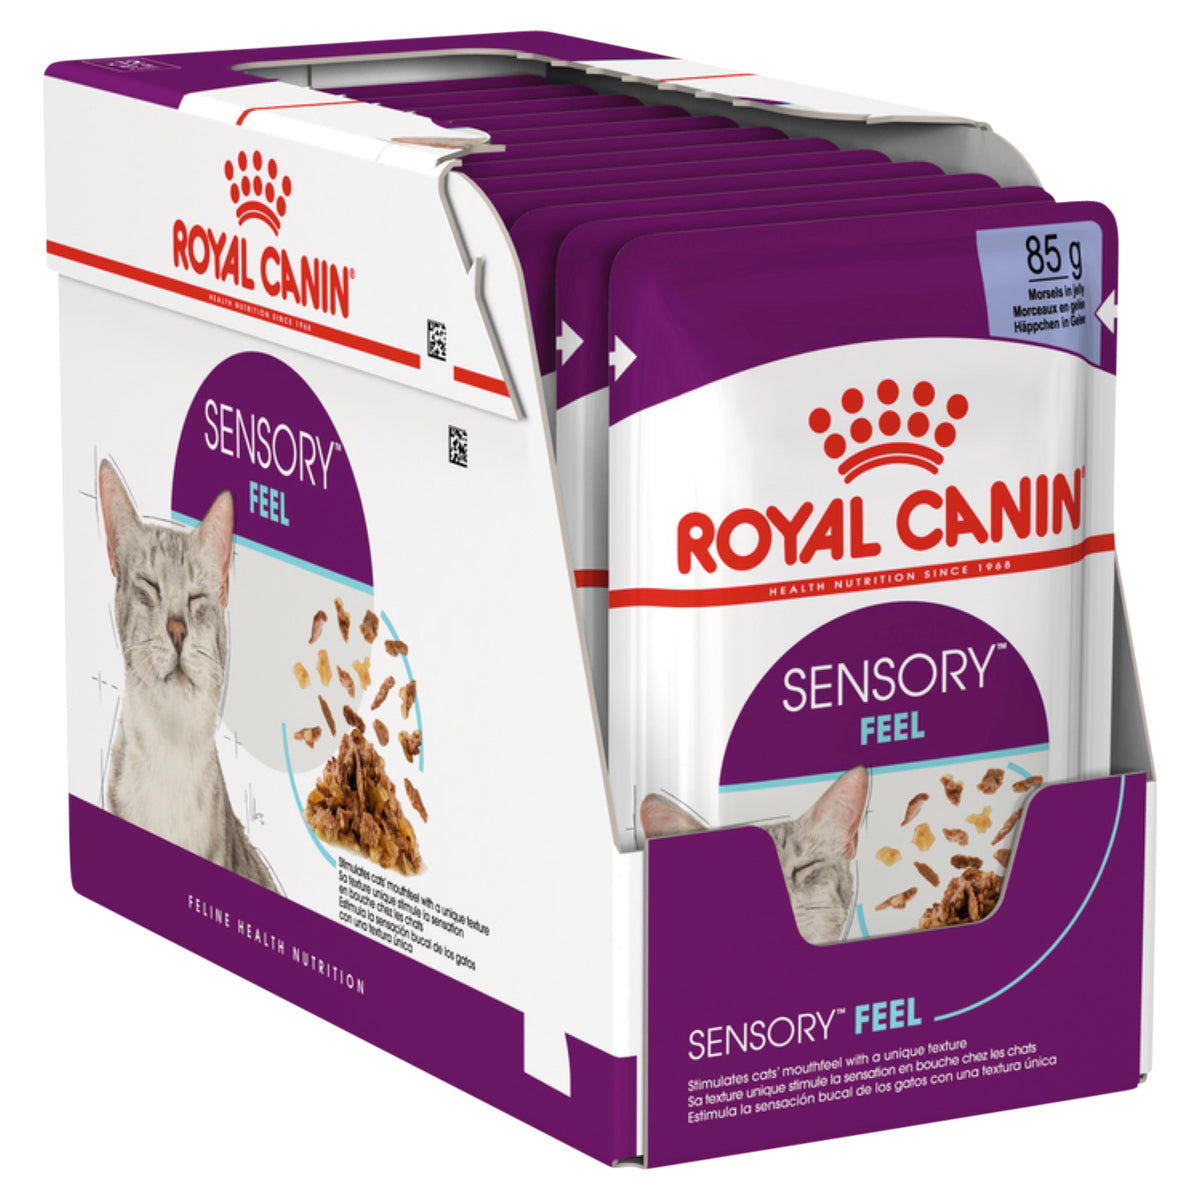 Royal Canin Sensory Feel Jelly Box 12x85g